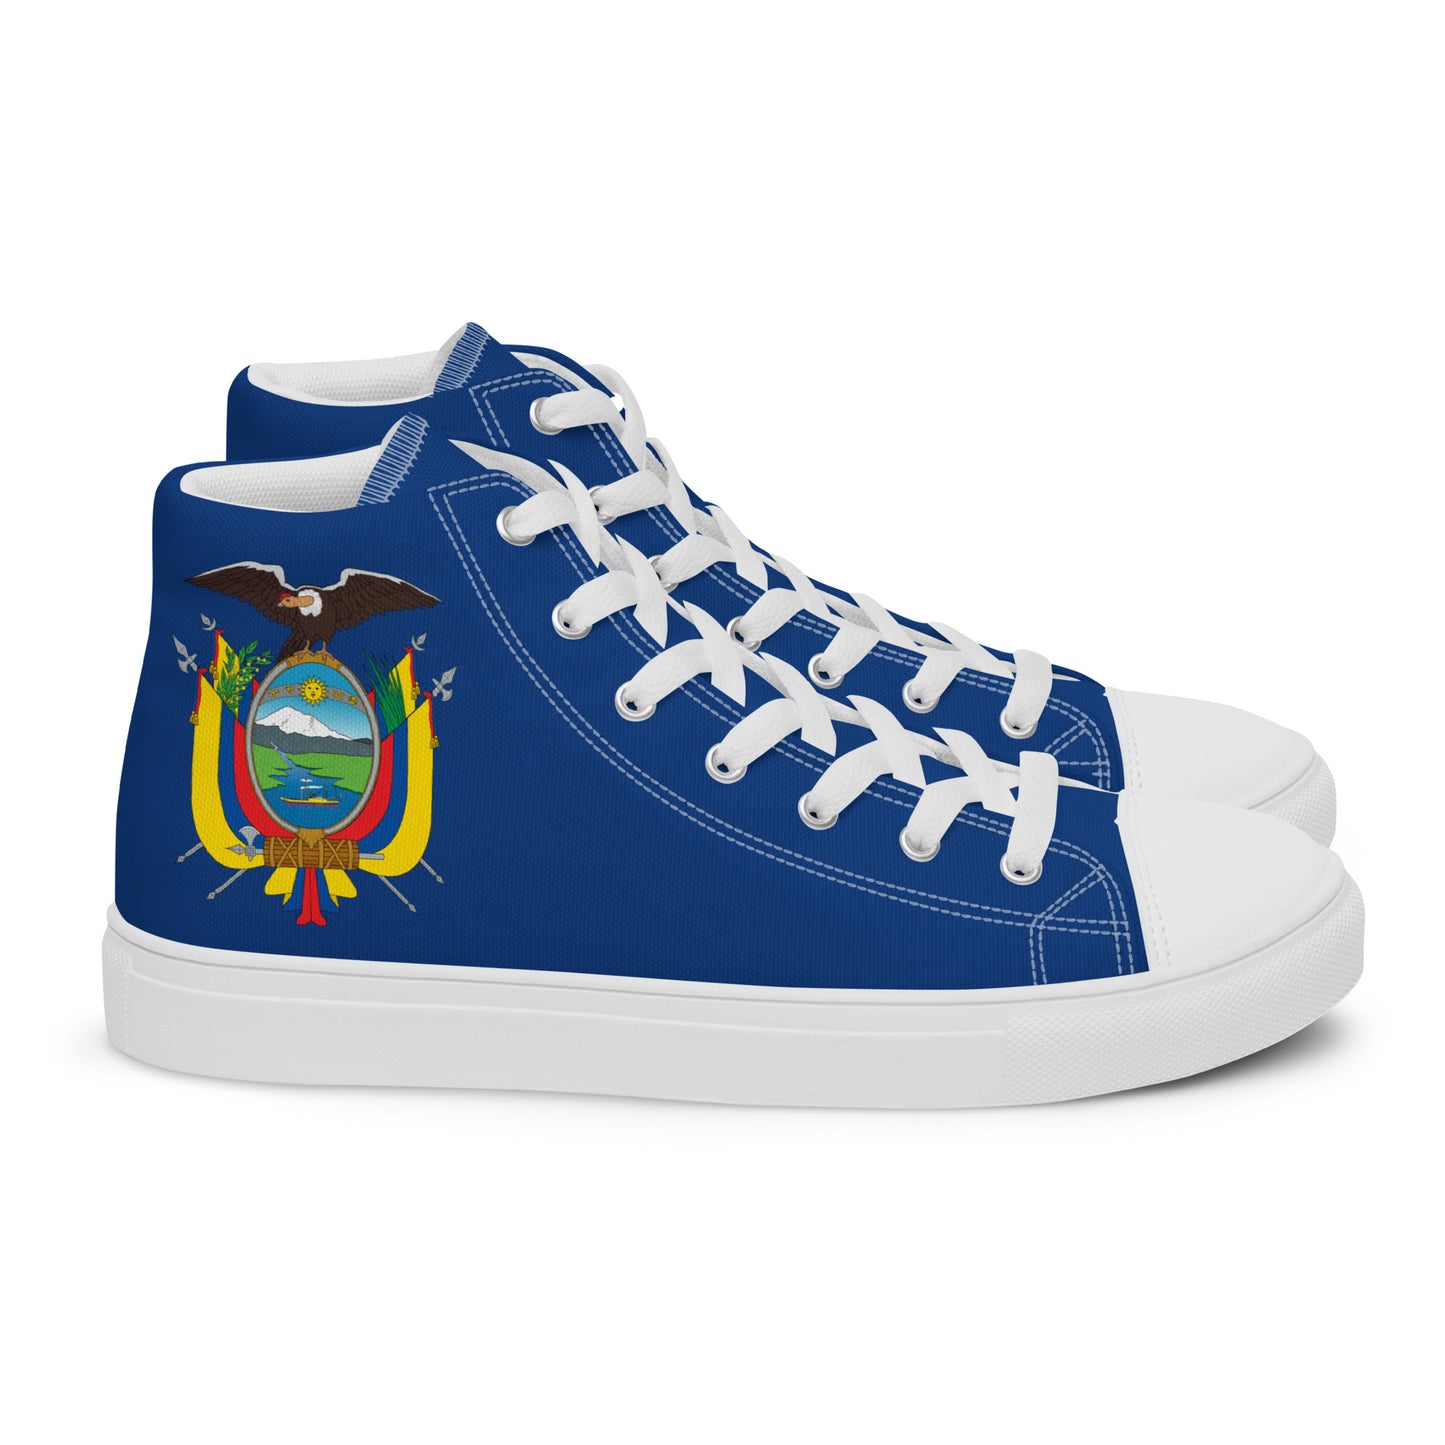 Ecuador - Mujer - Azul - Zapatos High top